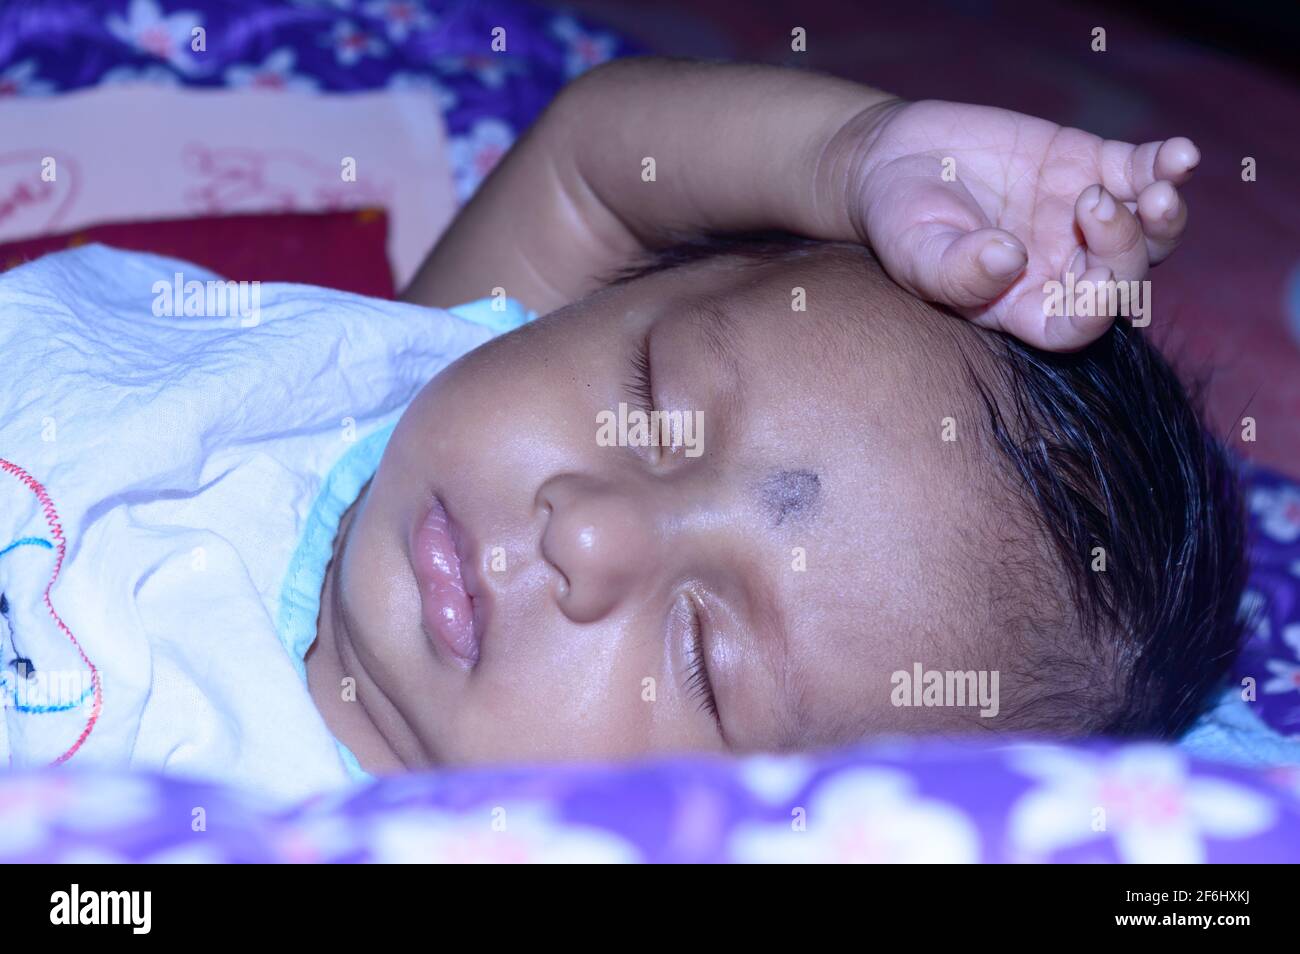 Nahaufnahme eines niedlichen schlafenden Neugeborenen. Nahaufnahme Porträt eines süßen gerade geborenen Jungen gefangen in schläfriger Stimmung schläfrige Augen. Hand auf Kopf. Fro Stockfoto